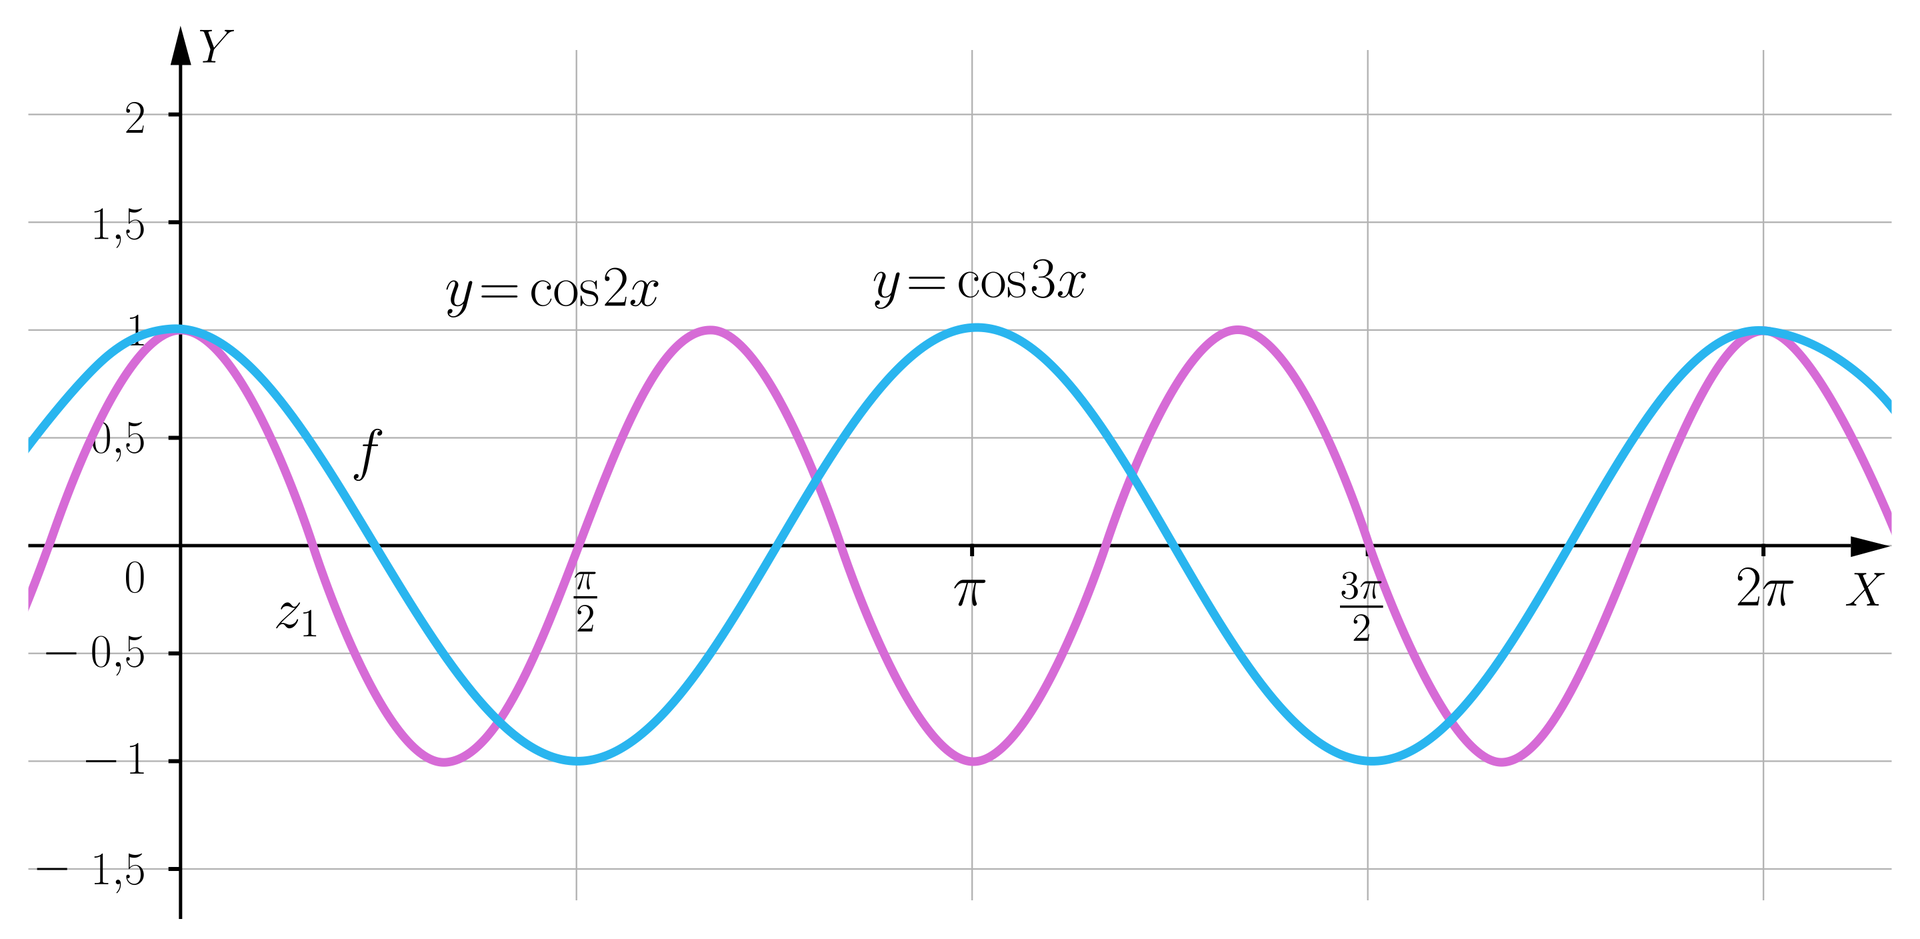 Ilustracja przedstawia układ współrzędnych z poziomą osią X od zera  do dwóch pi oraz z pionową osią Y od minus półtora do dwóch. Na płaszczyźnie narysowano dwa wykresy funkcji, wykres funkcji y=cos2x. Wykres funkcji przecina oś X w punkcie o współrzędnych z1; 0. Druga funkcja określona jest wzorem y=cos3x jej okres wynosi  dwa pi, natomiast wartości tej funkcji mają taki sam zakres, czyli zawierają się w przedziale -1; 1. Miejsca zerowe tej funkcji to π6; 0 oraz π2; 0. 